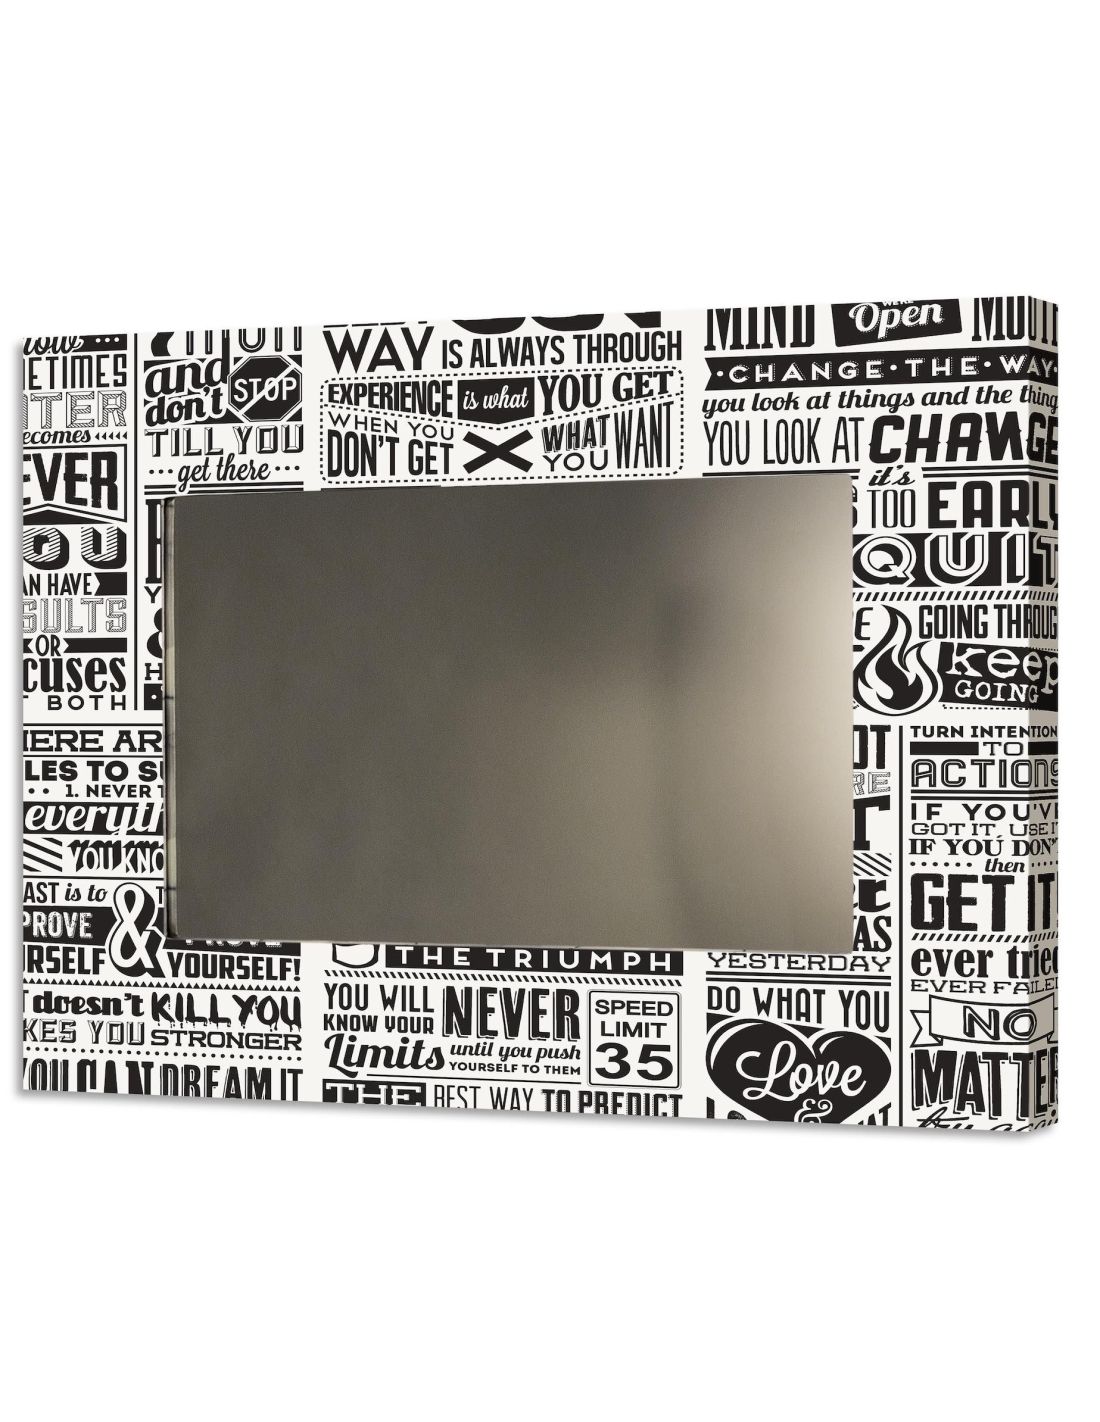 Specchio da parete decorativo 100x70 nero con cornice per camera